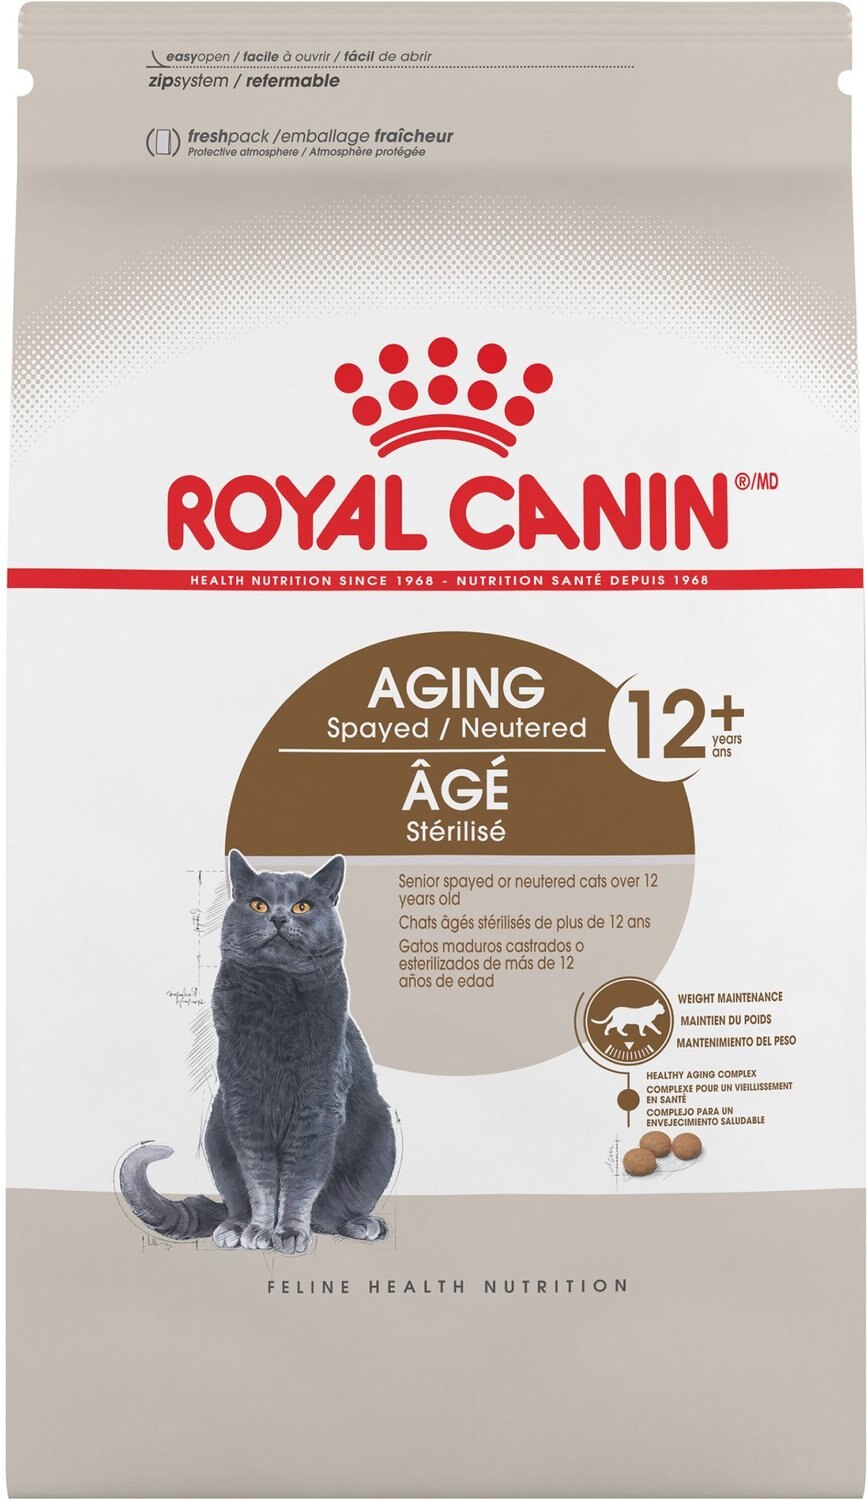 royal canin cat kibble